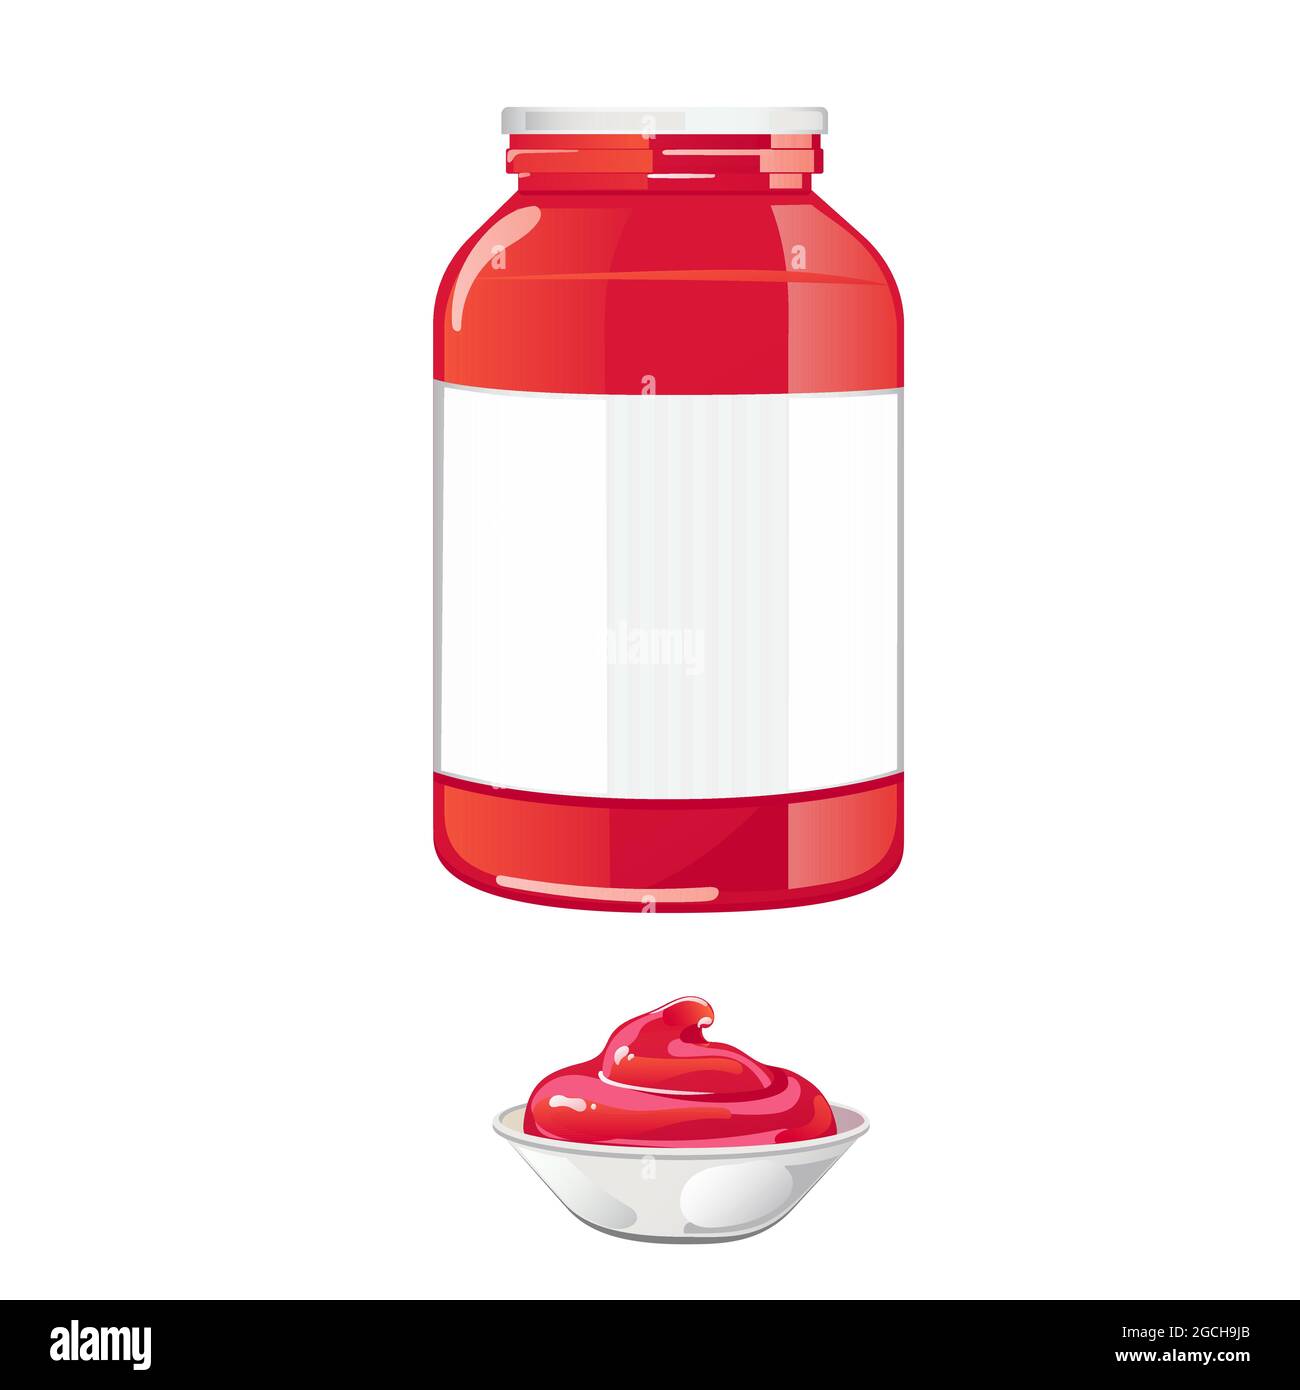 Glas mit Tomatensauce und weißem Deckel. Rote natürliche würzige Würze in Behälter mit Etikett. Vektor-Illustration in flachen Cartoon-Design isoliert auf weißem Hintergrund. Stock Vektor